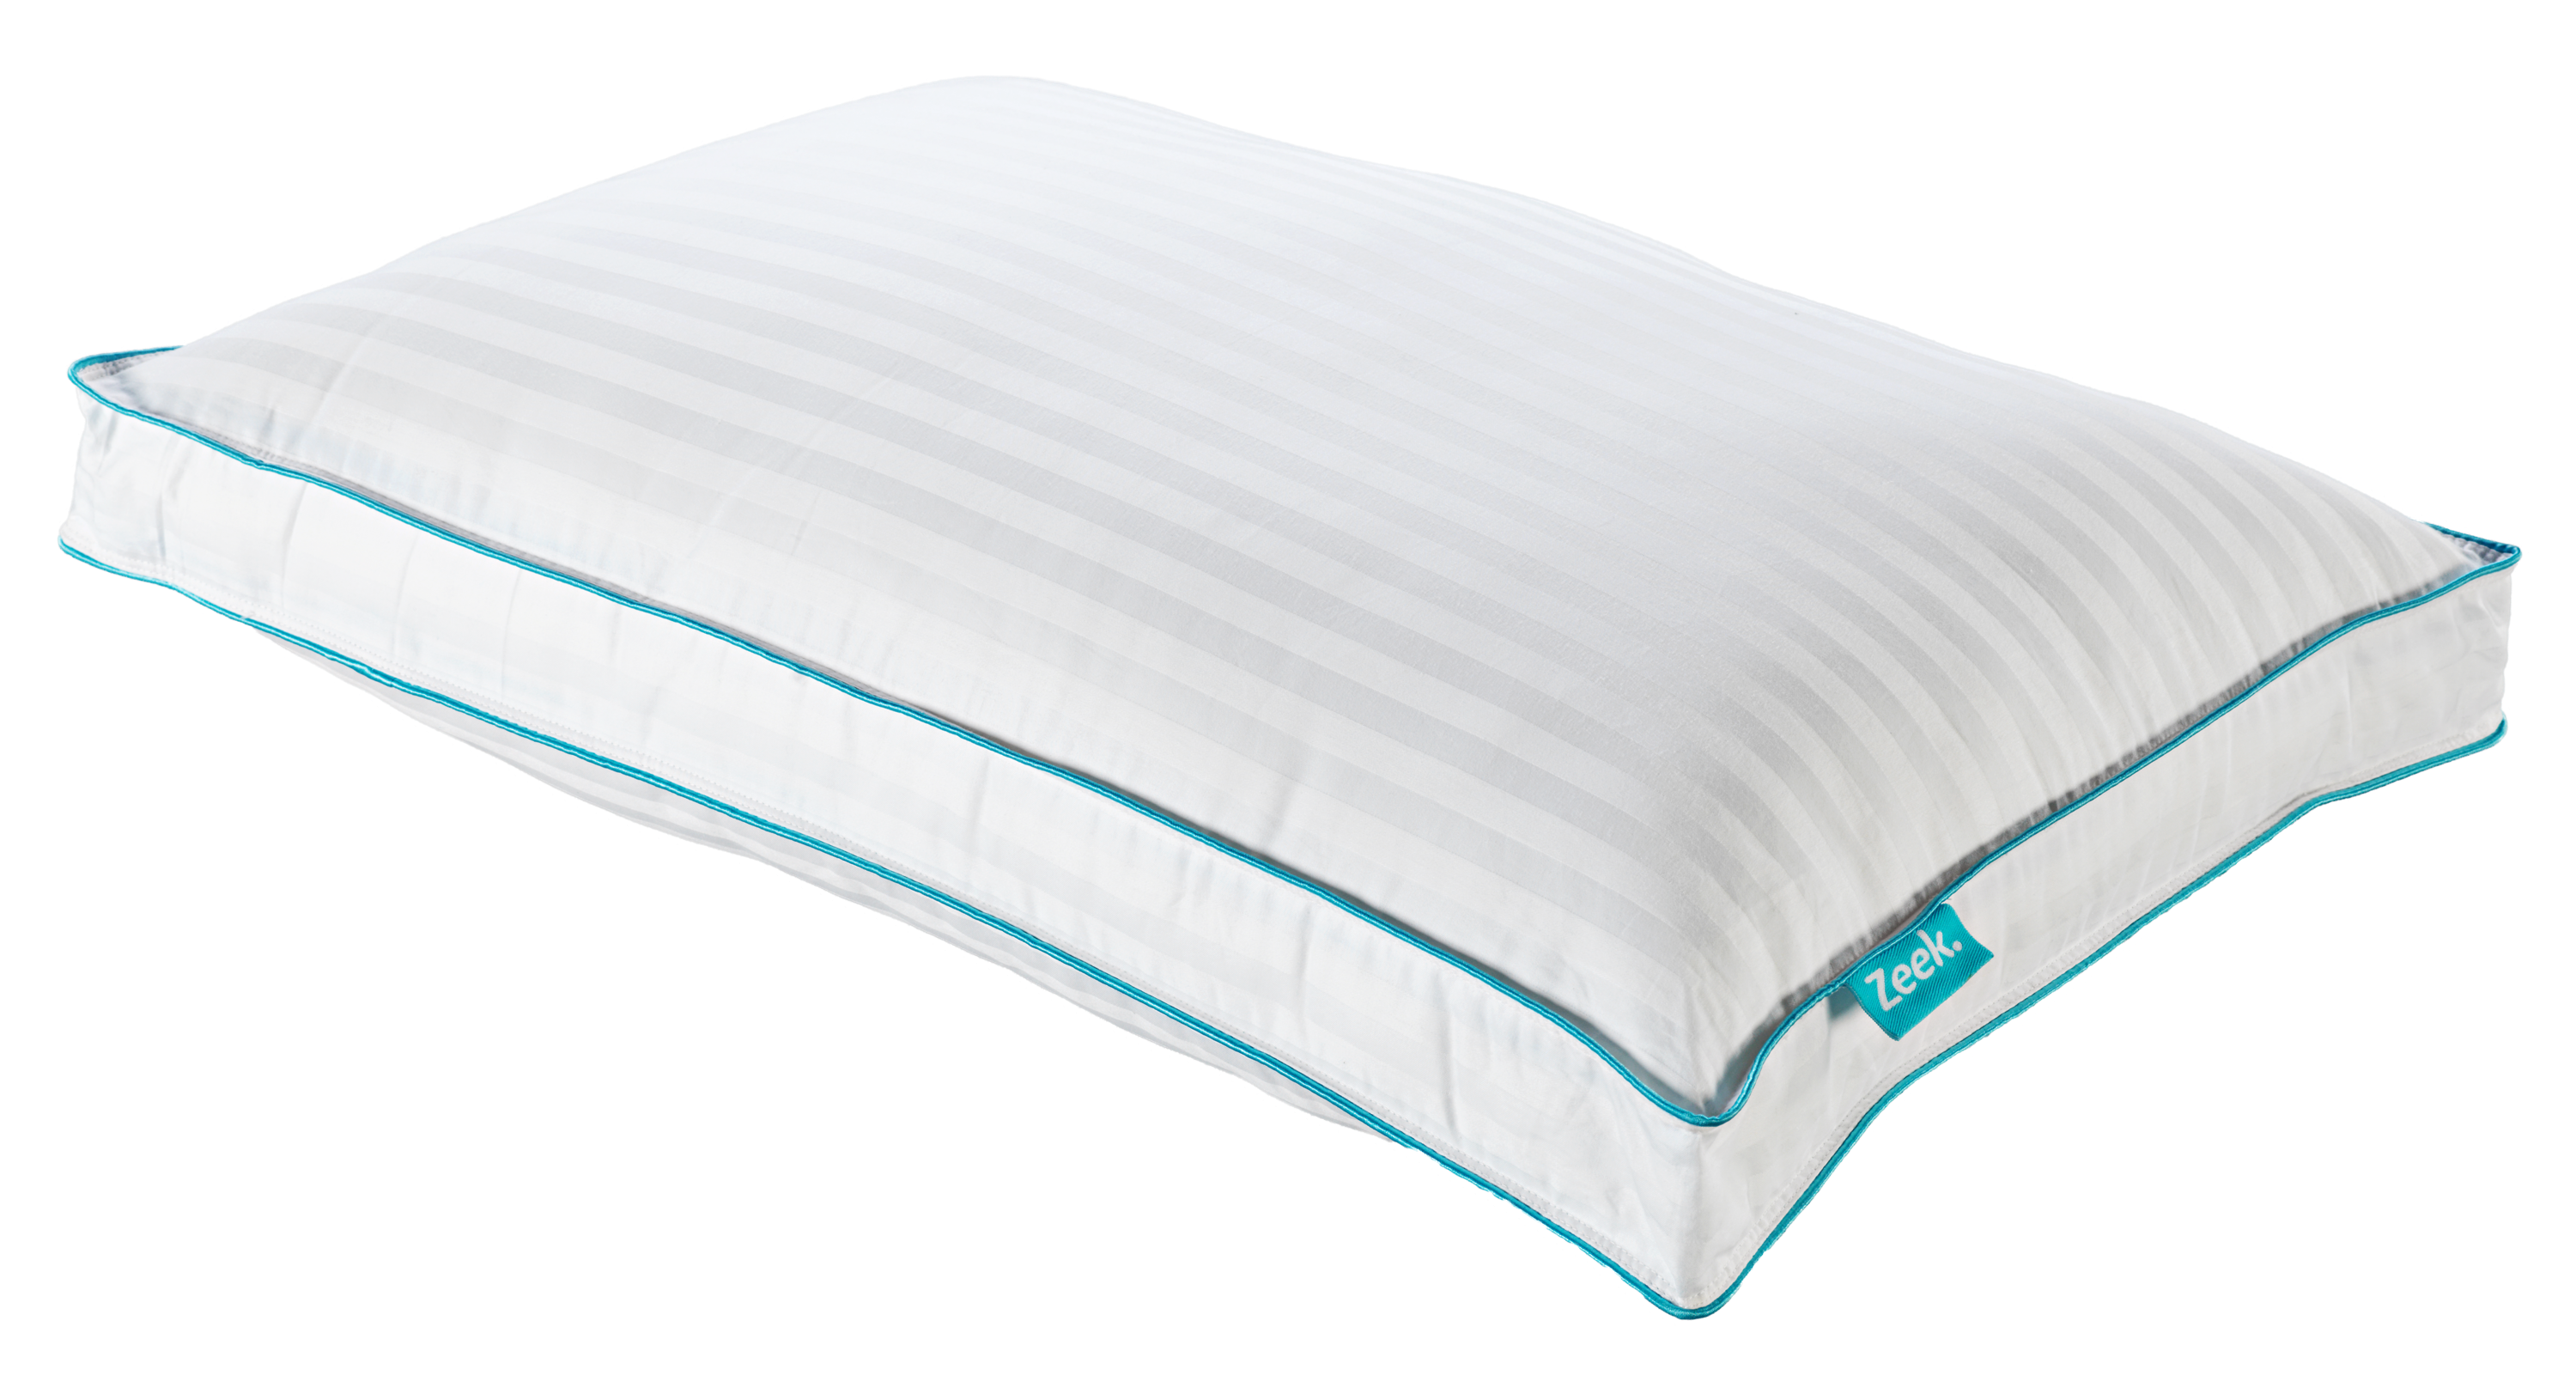 An image of the Zeek Cloud Pillow.